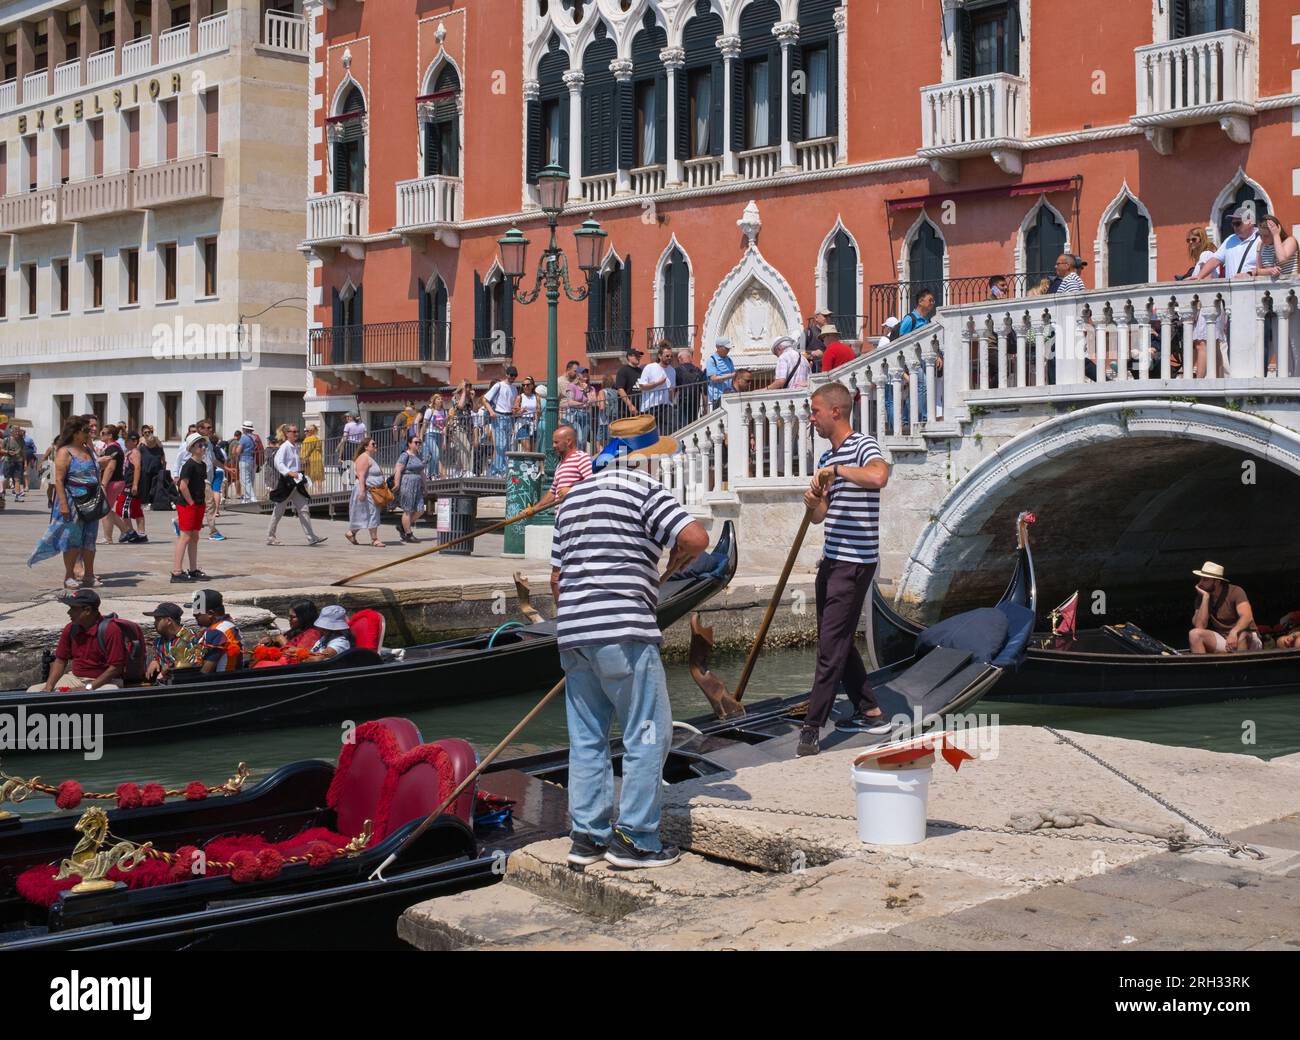 Gondolas, Grand Canal, Venice, Italy Stock Photo - Alamy